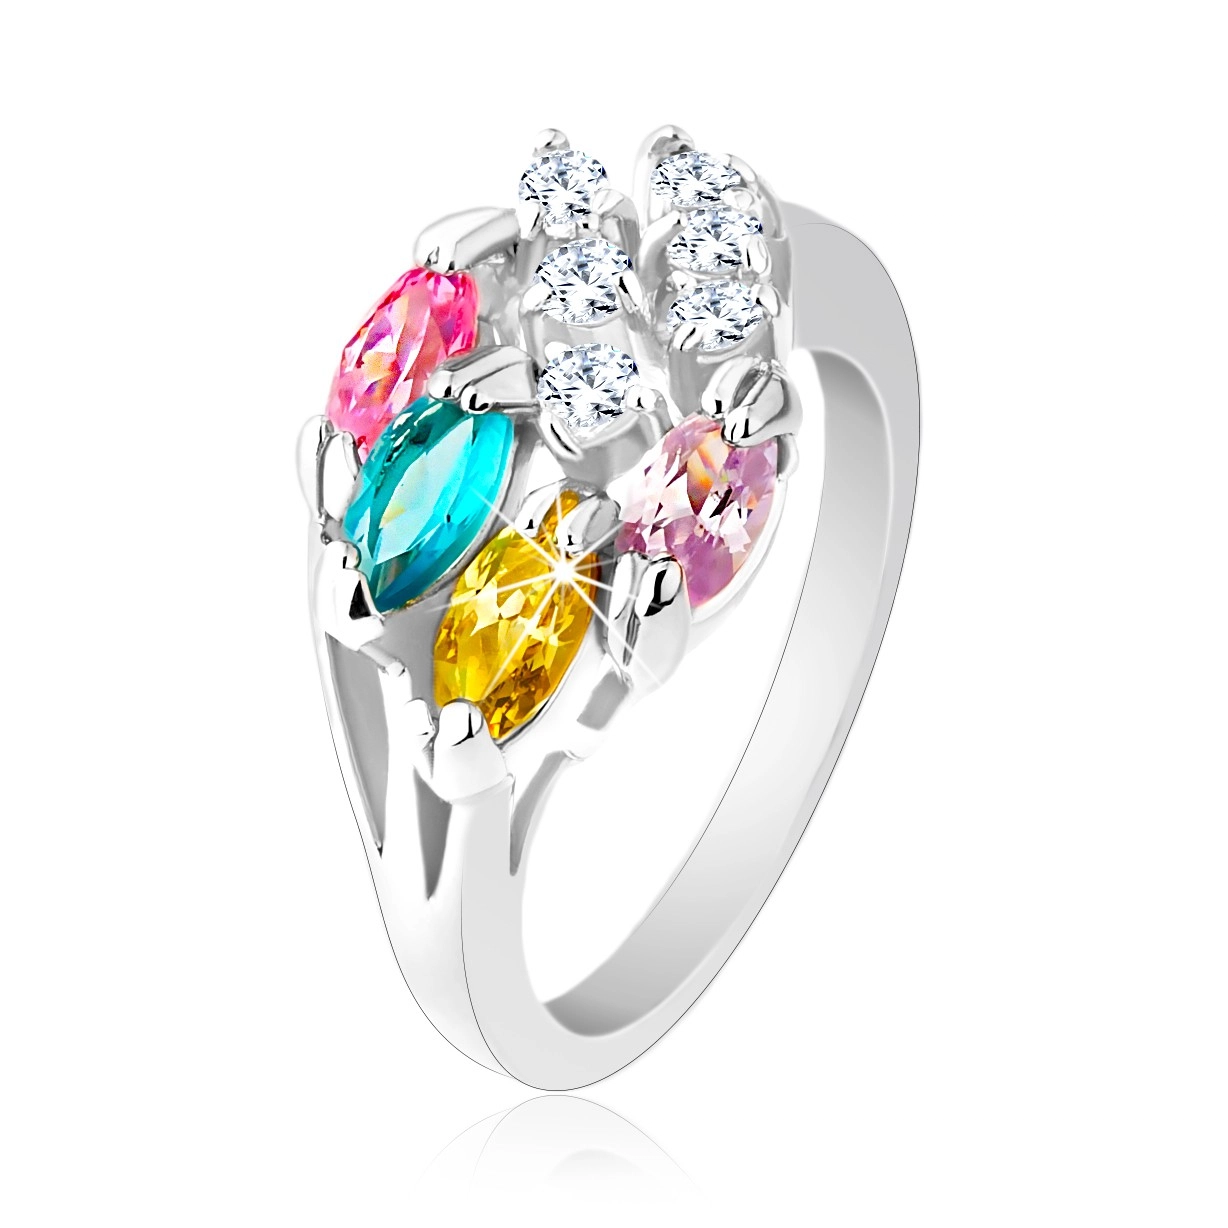 Lesklý prsteň striebornej farby, farebné zirkónové zrnká, číre zirkóniky - Veľkosť: 51 mm